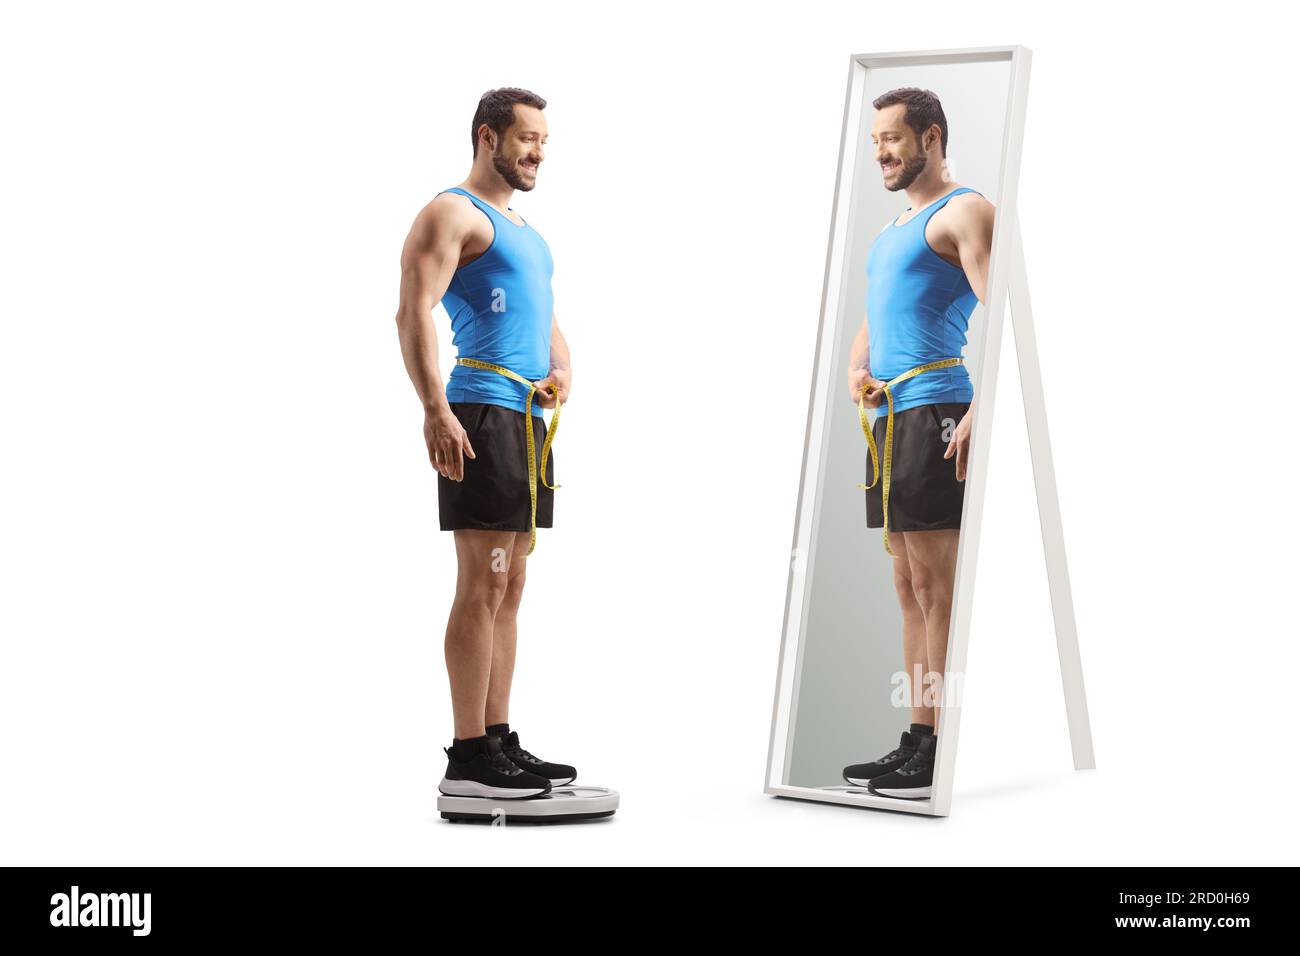 Aufnahme über die gesamte Länge eines Mannes in Sportbekleidung, der auf einer Waage vor einem Spiegel steht, isoliert auf weißem Hintergrund Stockfoto